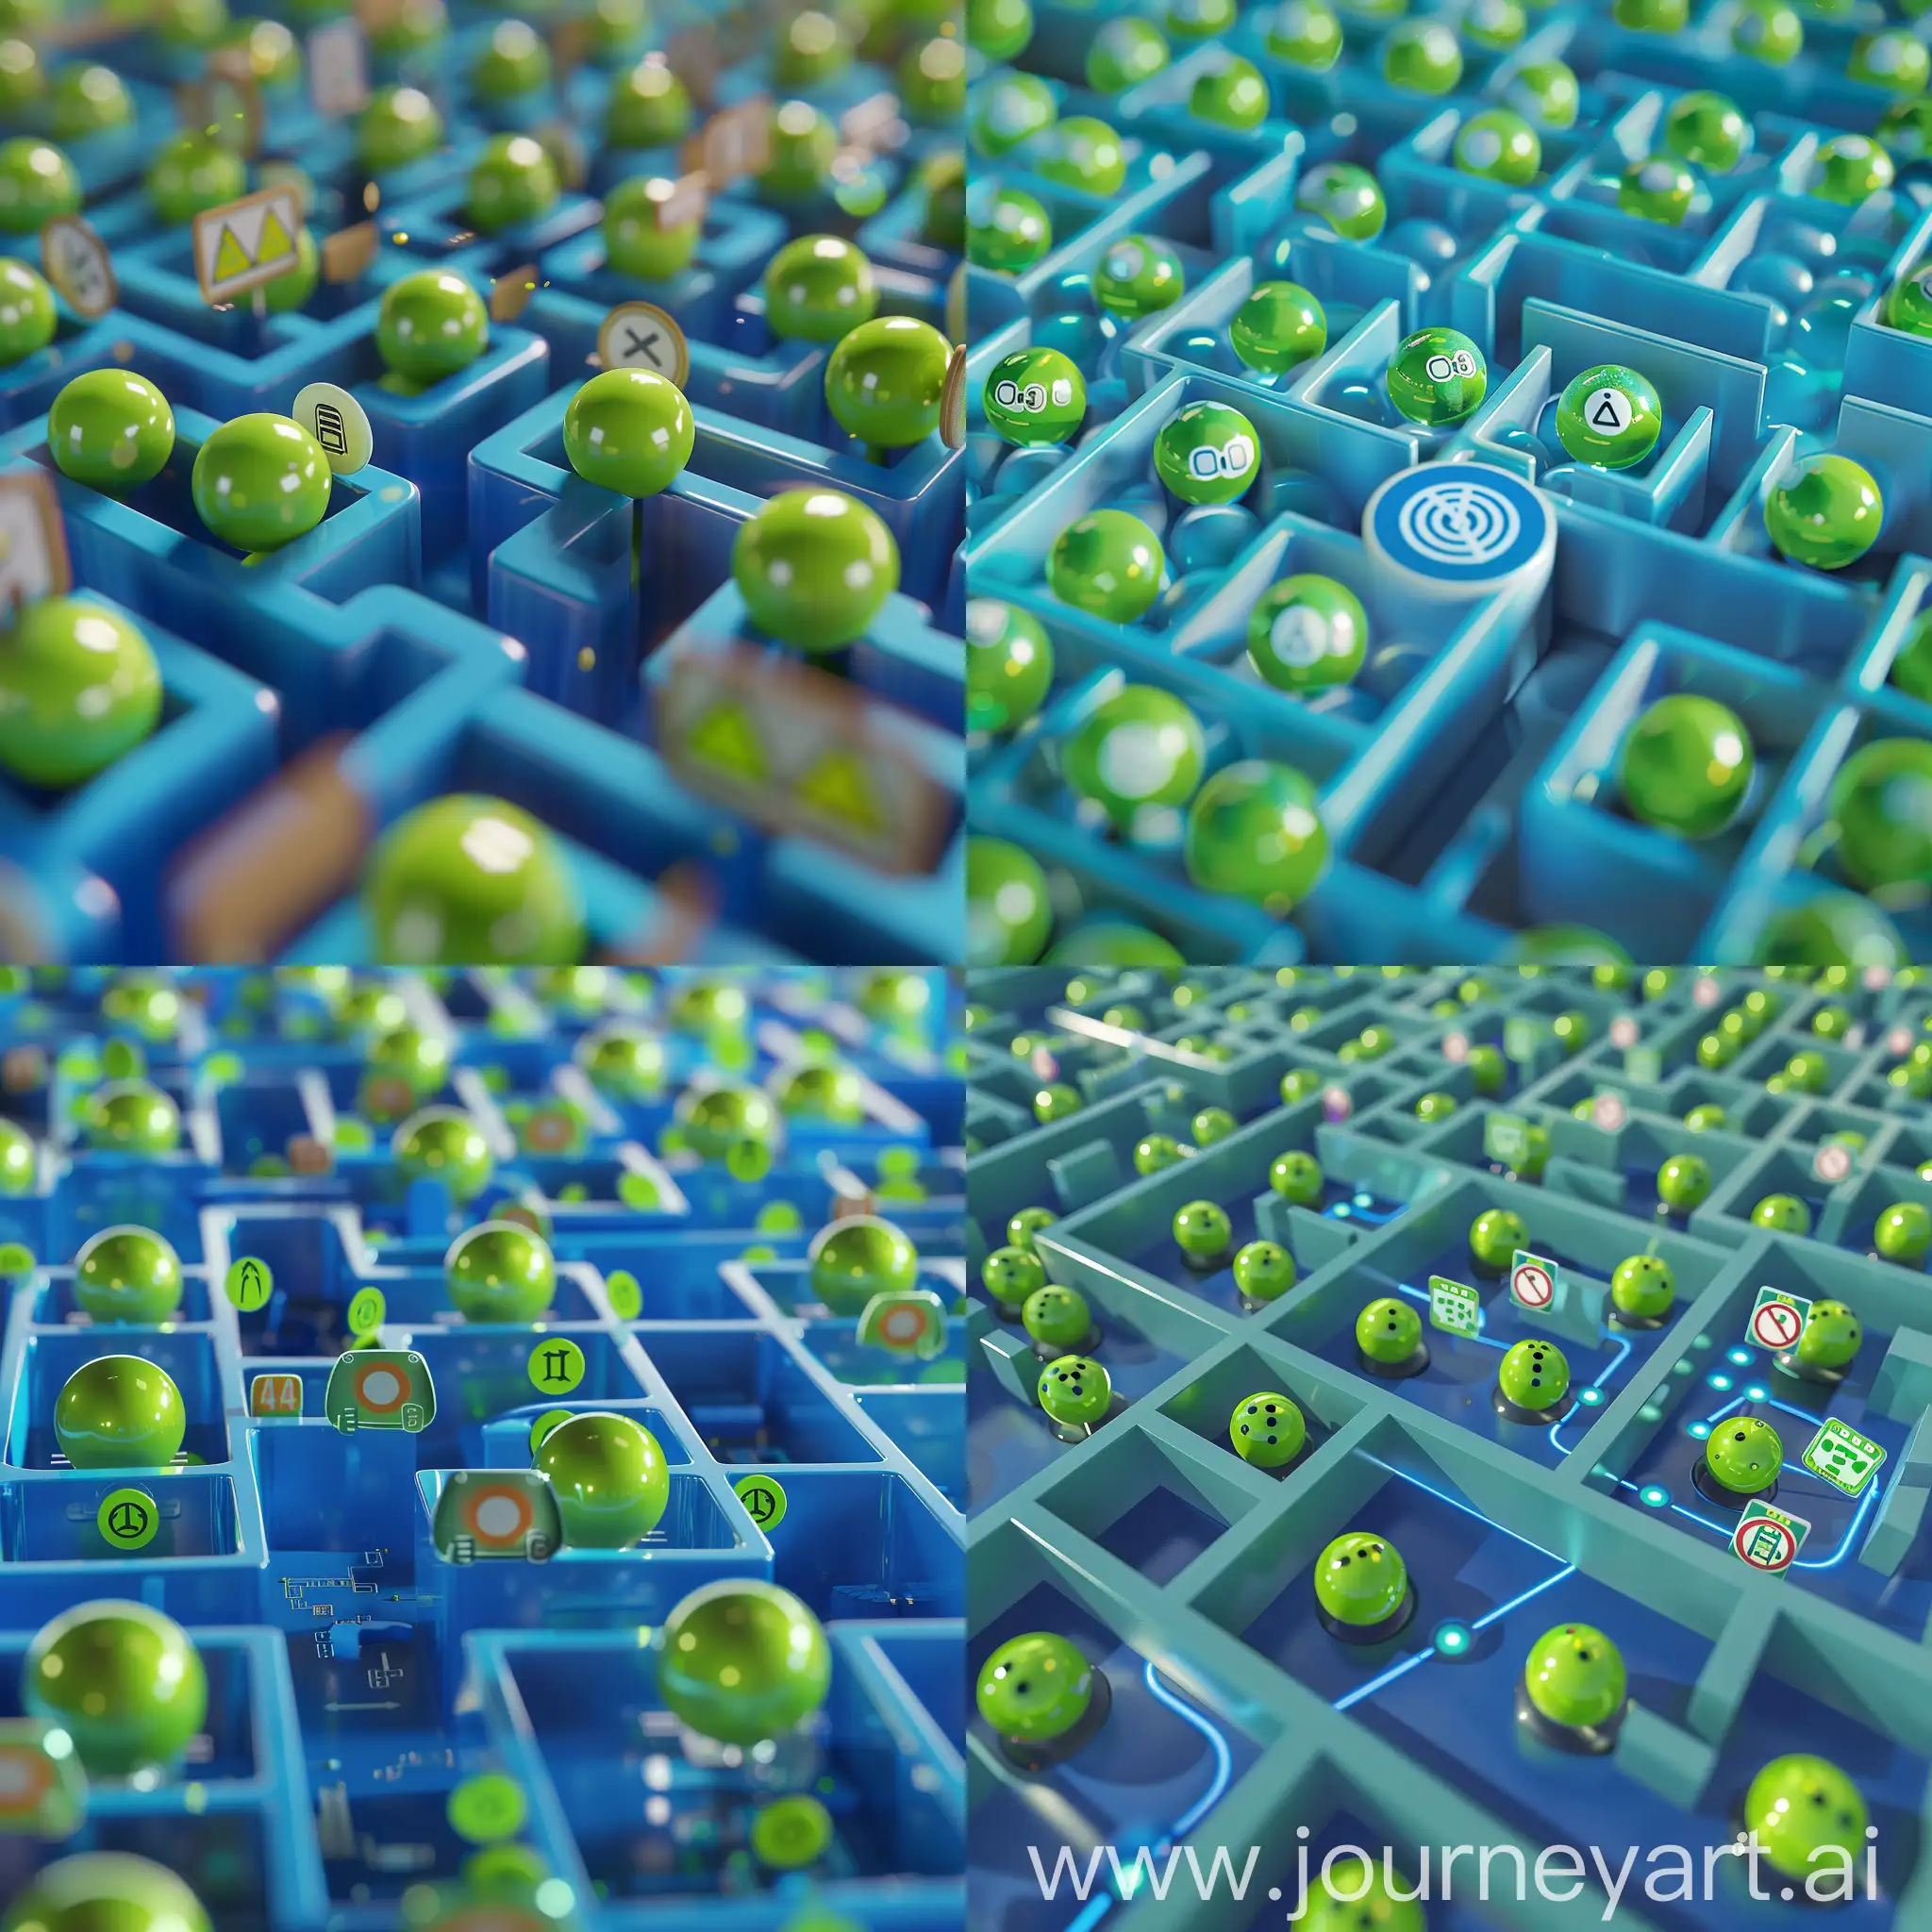 一个简洁的方格迷宫结构,
迷宫内有一条明确的蓝色通道路径,路径上有各种指示牌，沿着蓝色通道，有绿色的小球有序地前行。